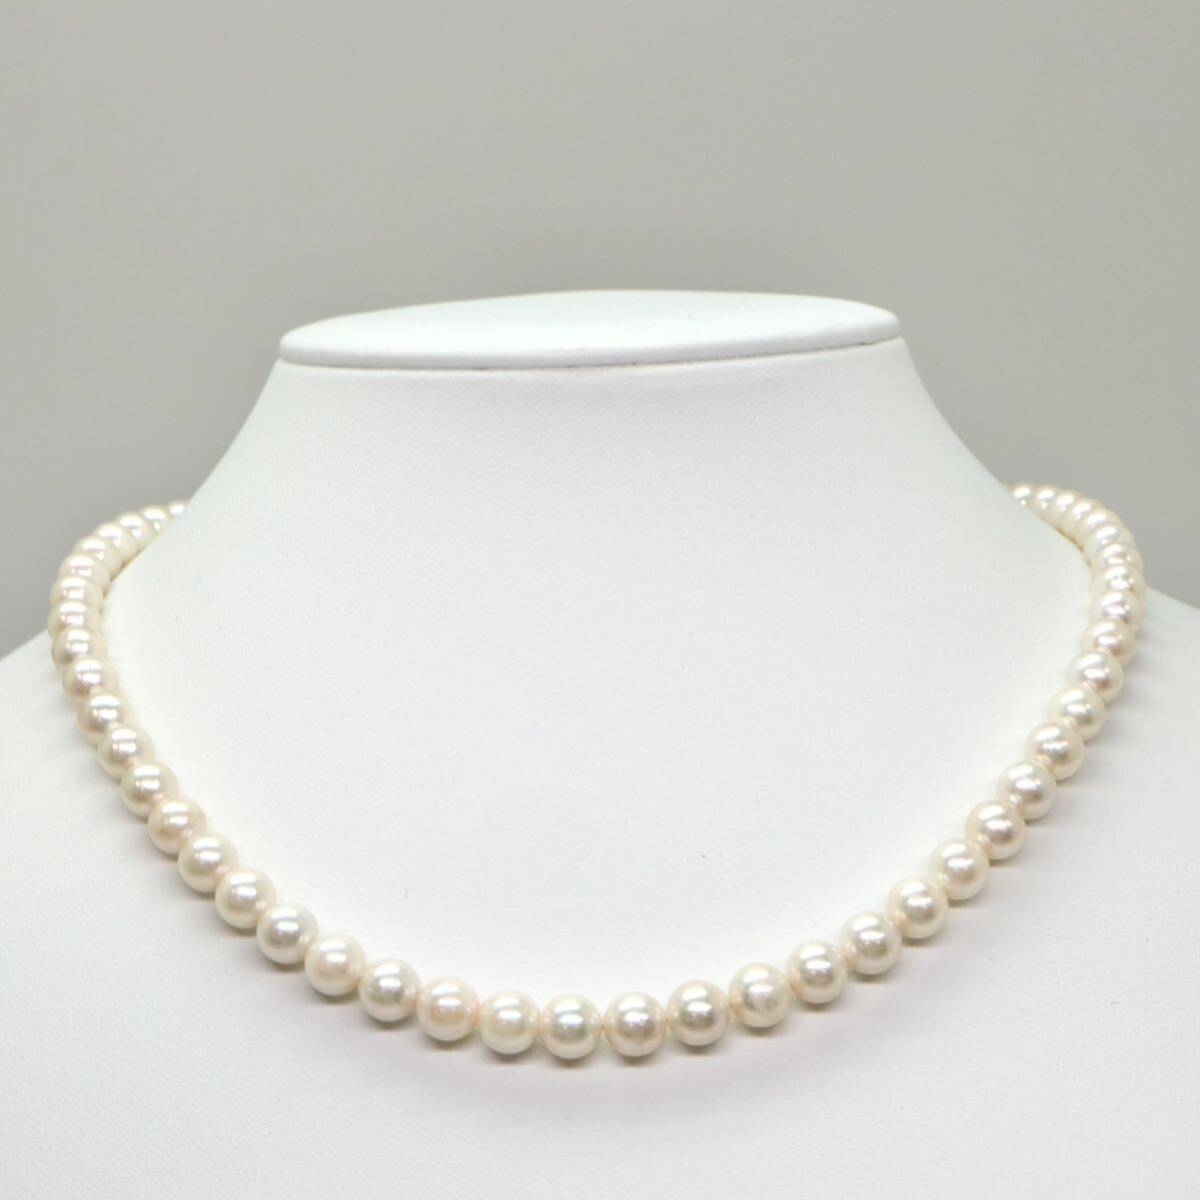 ◆アコヤ本真珠ネックレス◆M 約30.1g 約44.0cm 6.5-7.0mm珠 pearl パール jewelry necklace ジュエリー DB0/DH0_画像2